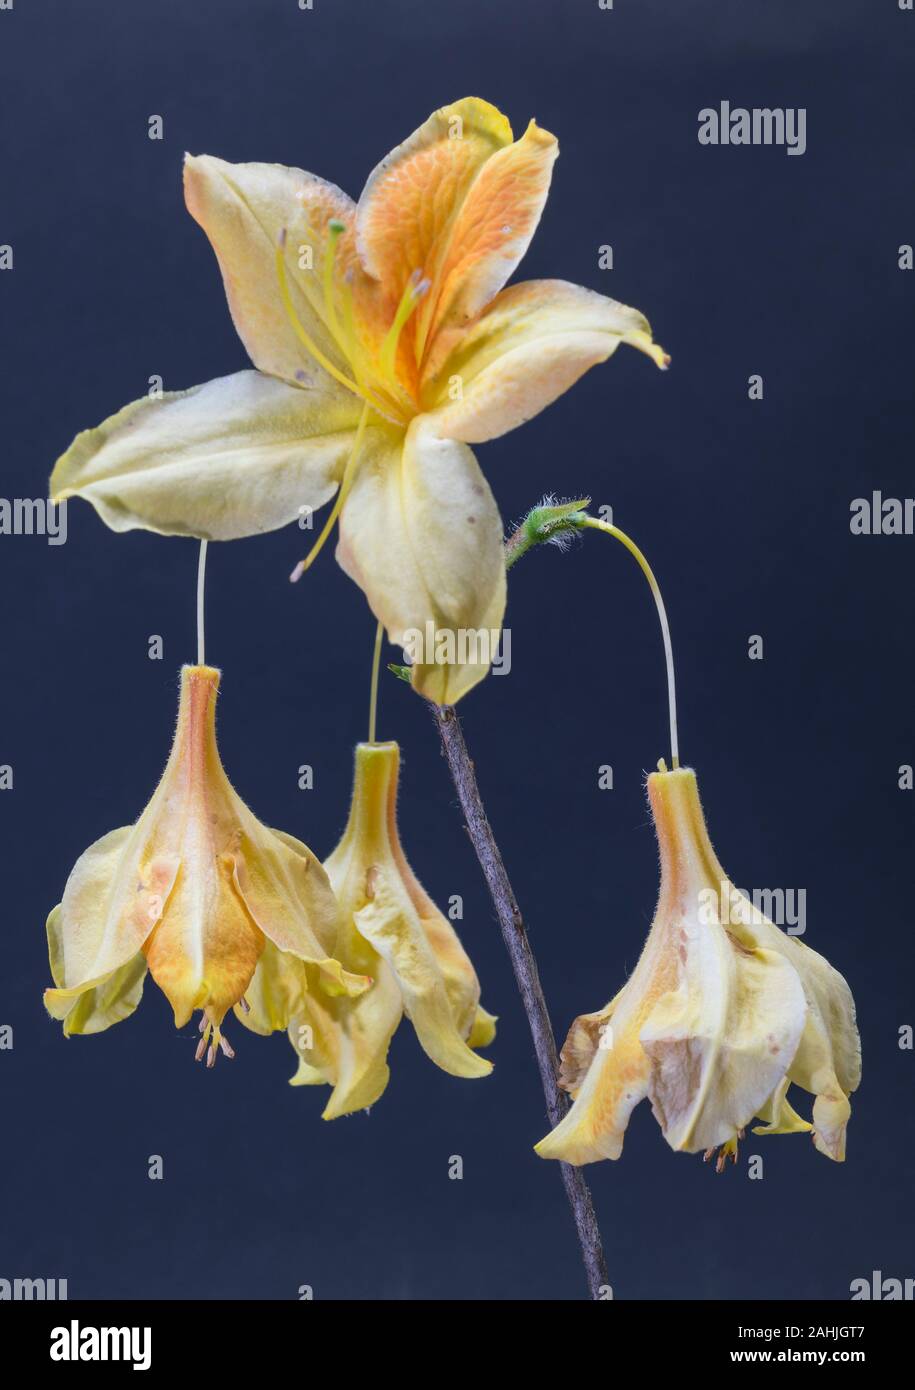 isolated flower of azalea mollis Stock Photo